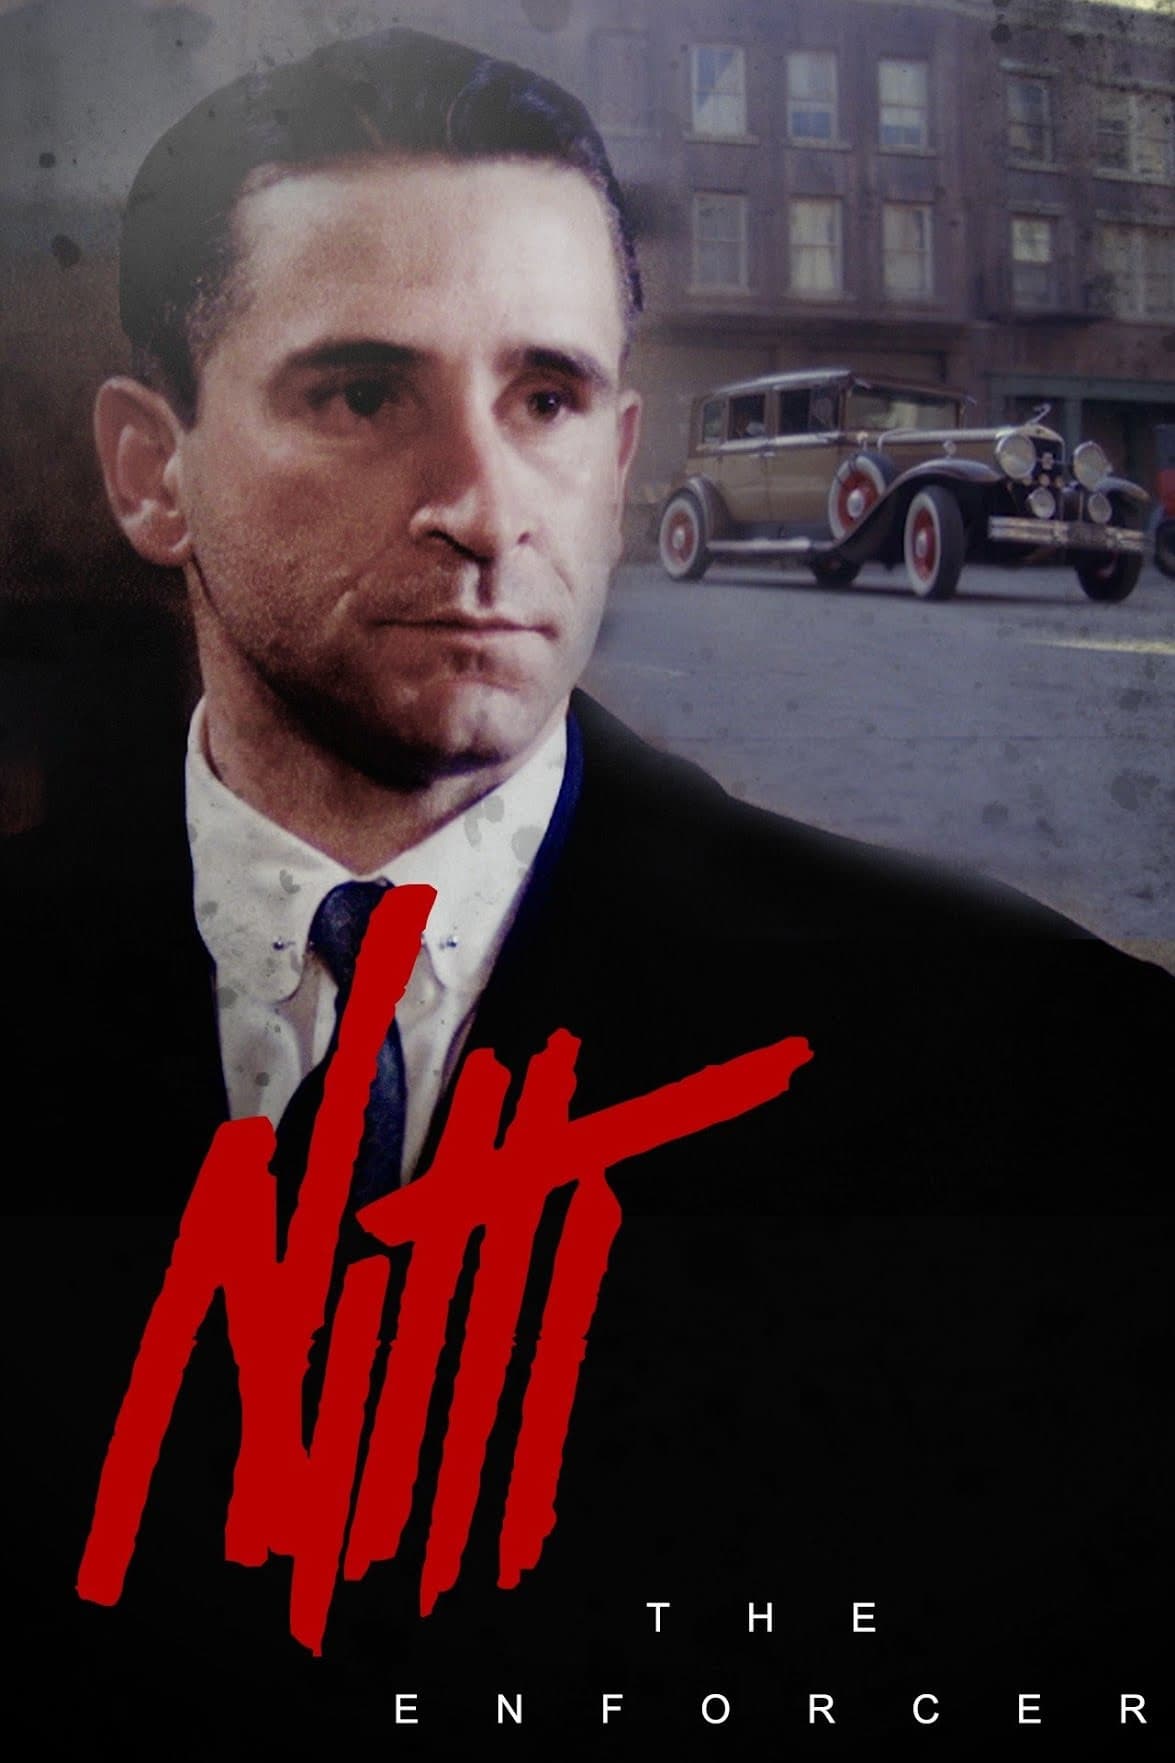 Frank Nitti: The Enforcer (1988)